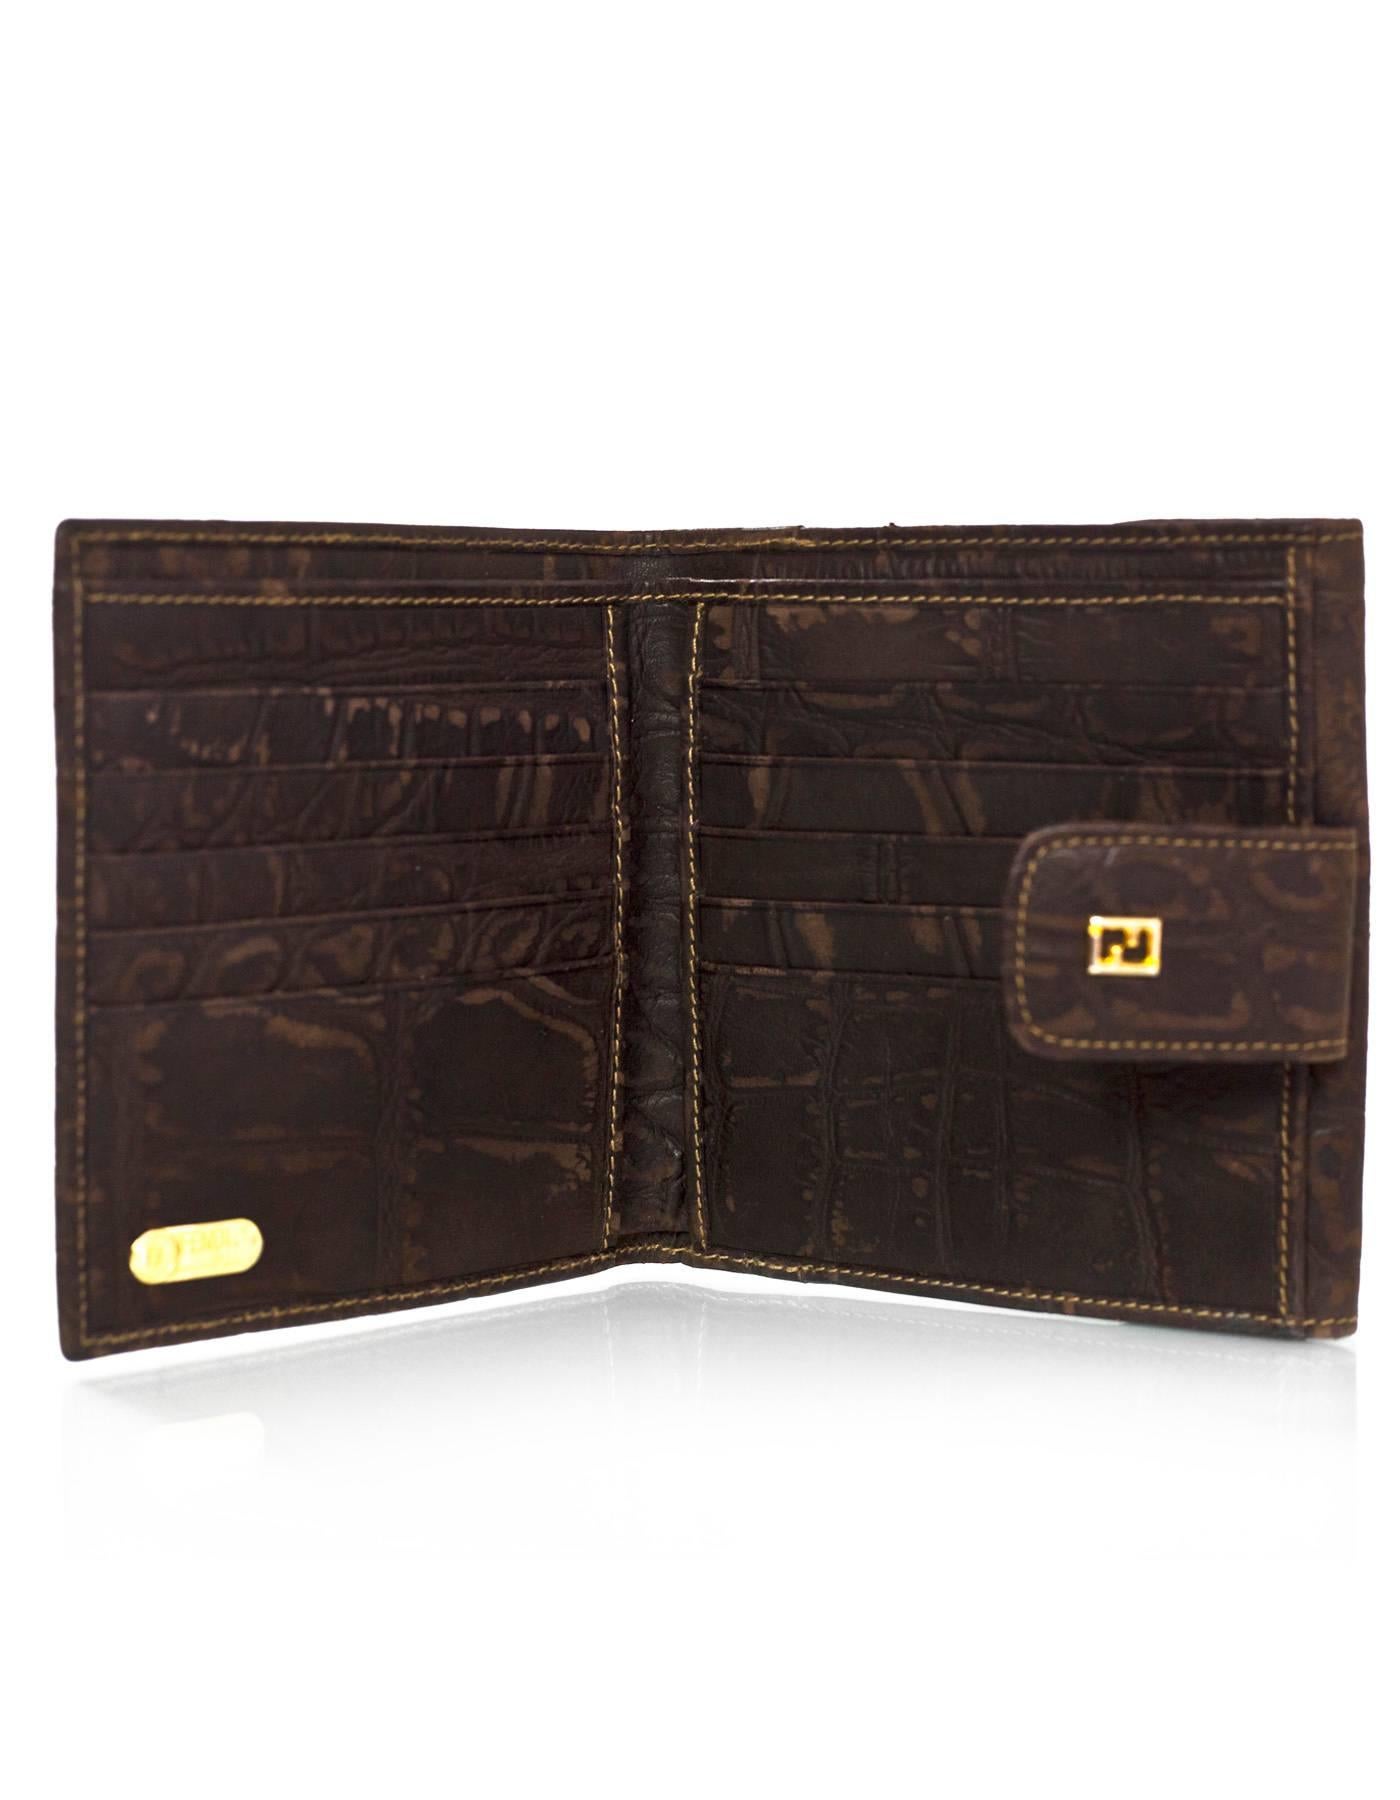 Fendi Vintage Brown Croc Embossed Distressed Leather Wallet 1